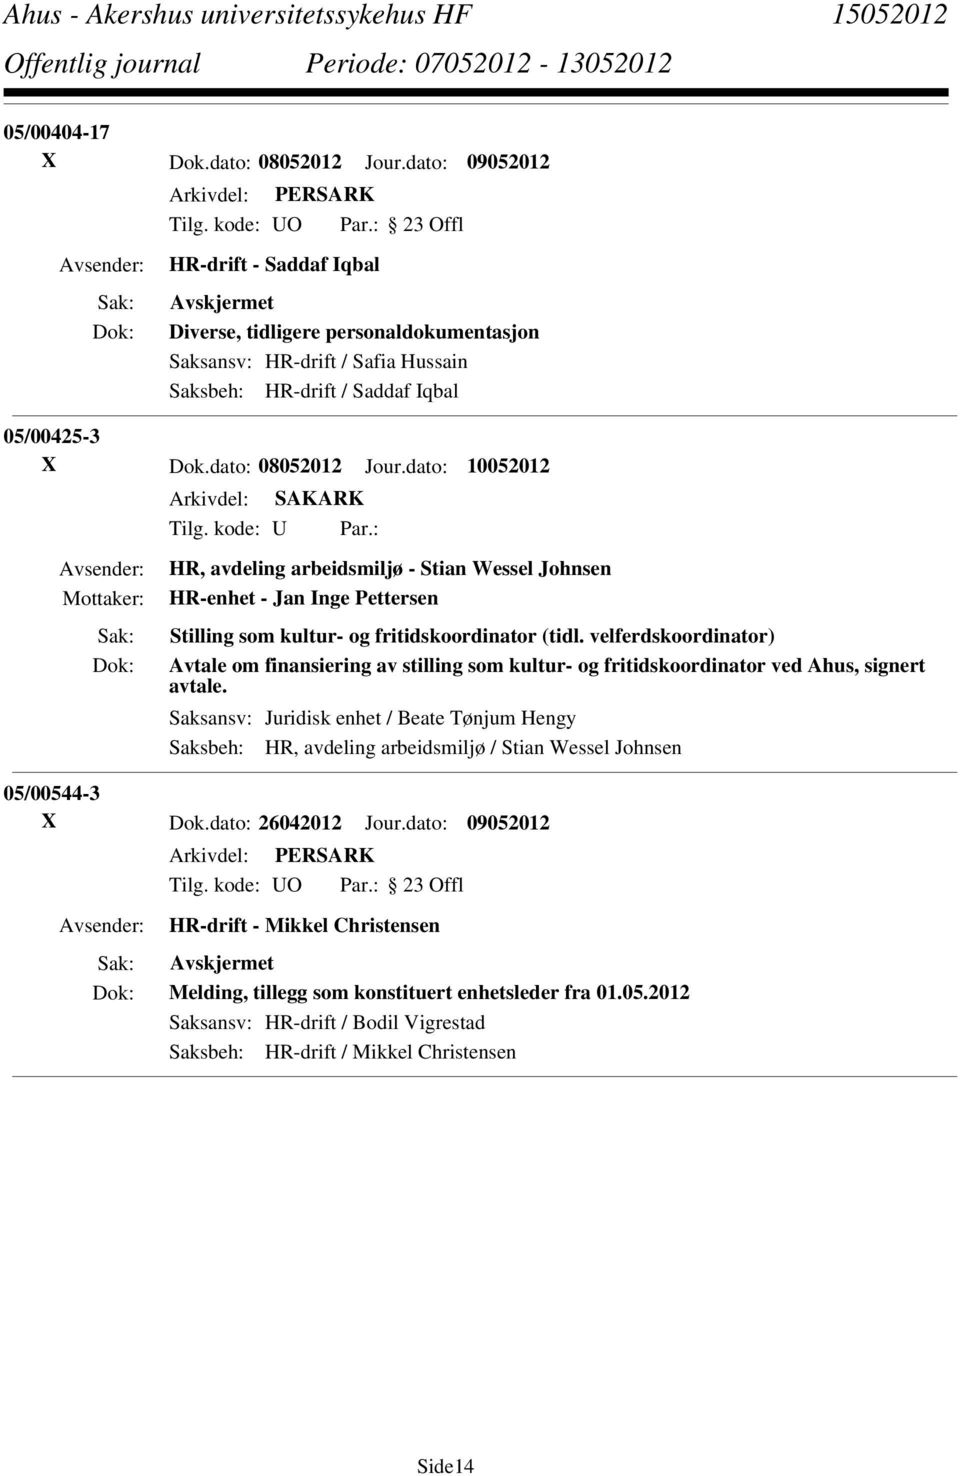 dato: 10052012 Tilg. kode: U Par.: HR, avdeling arbeidsmiljø - Stian Wessel Johnsen HR-enhet - Jan Inge Pettersen Stilling som kultur- og fritidskoordinator (tidl.